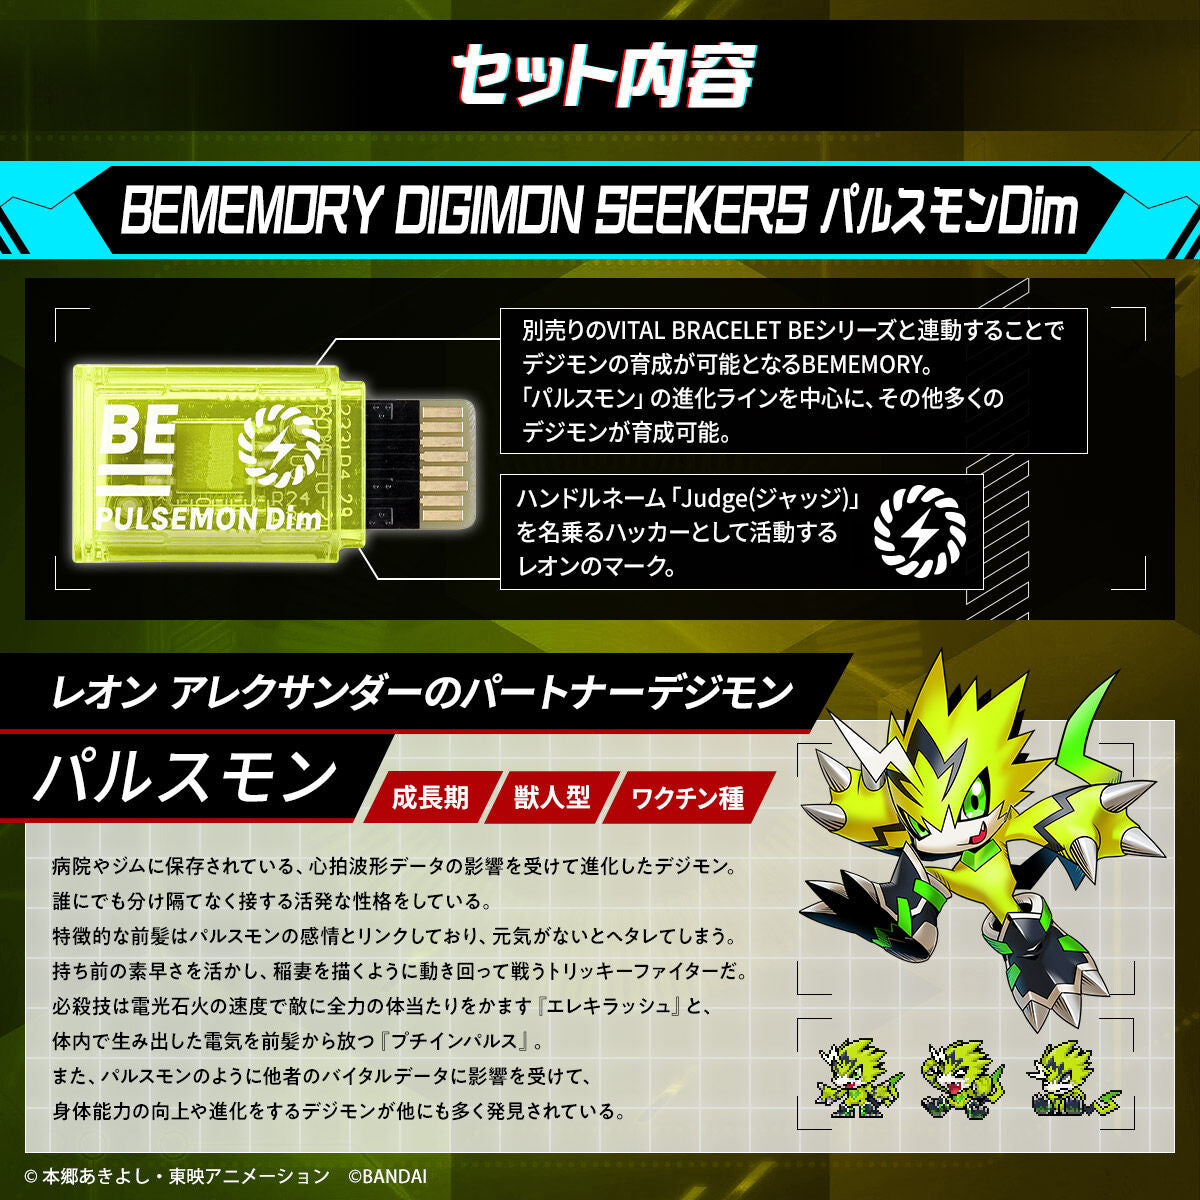 BEMEMORY Digimon Seekers Pulsemon Dim